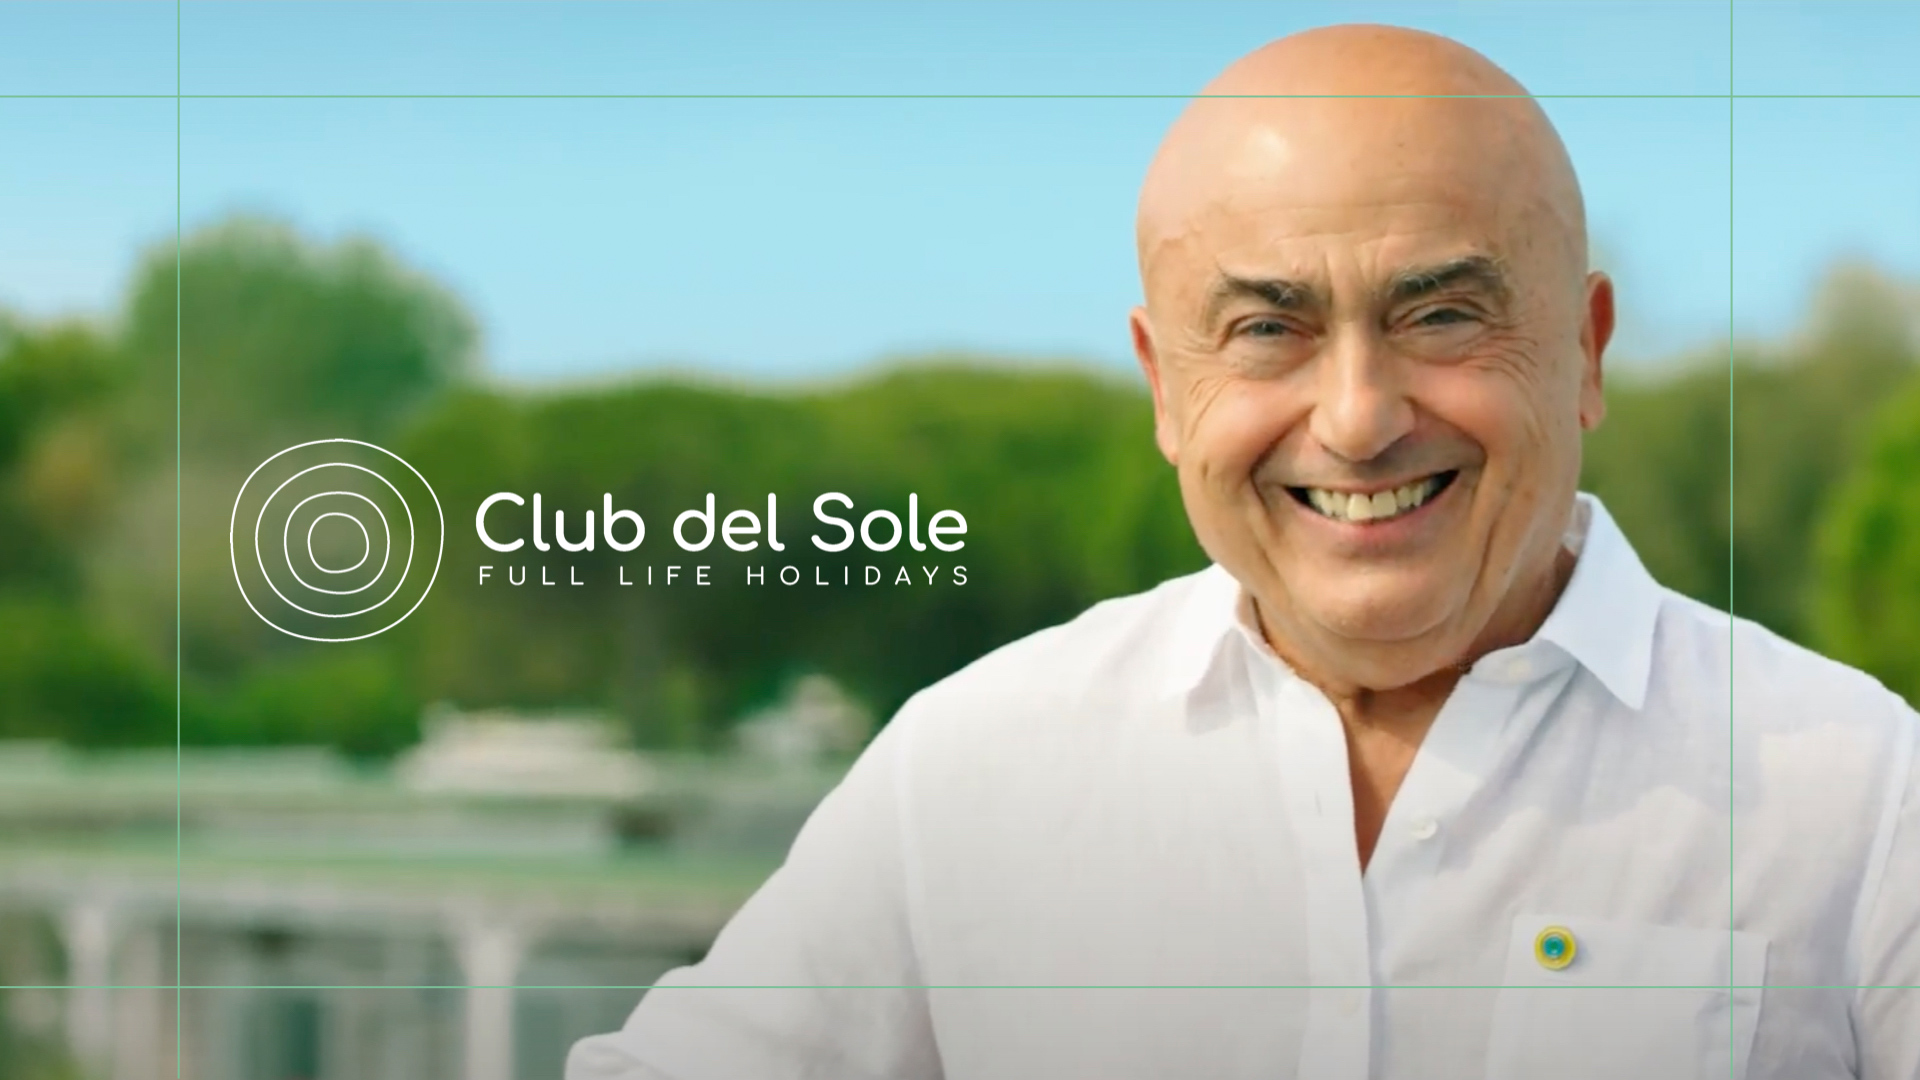 Club del Sole debutta in TV con Conic